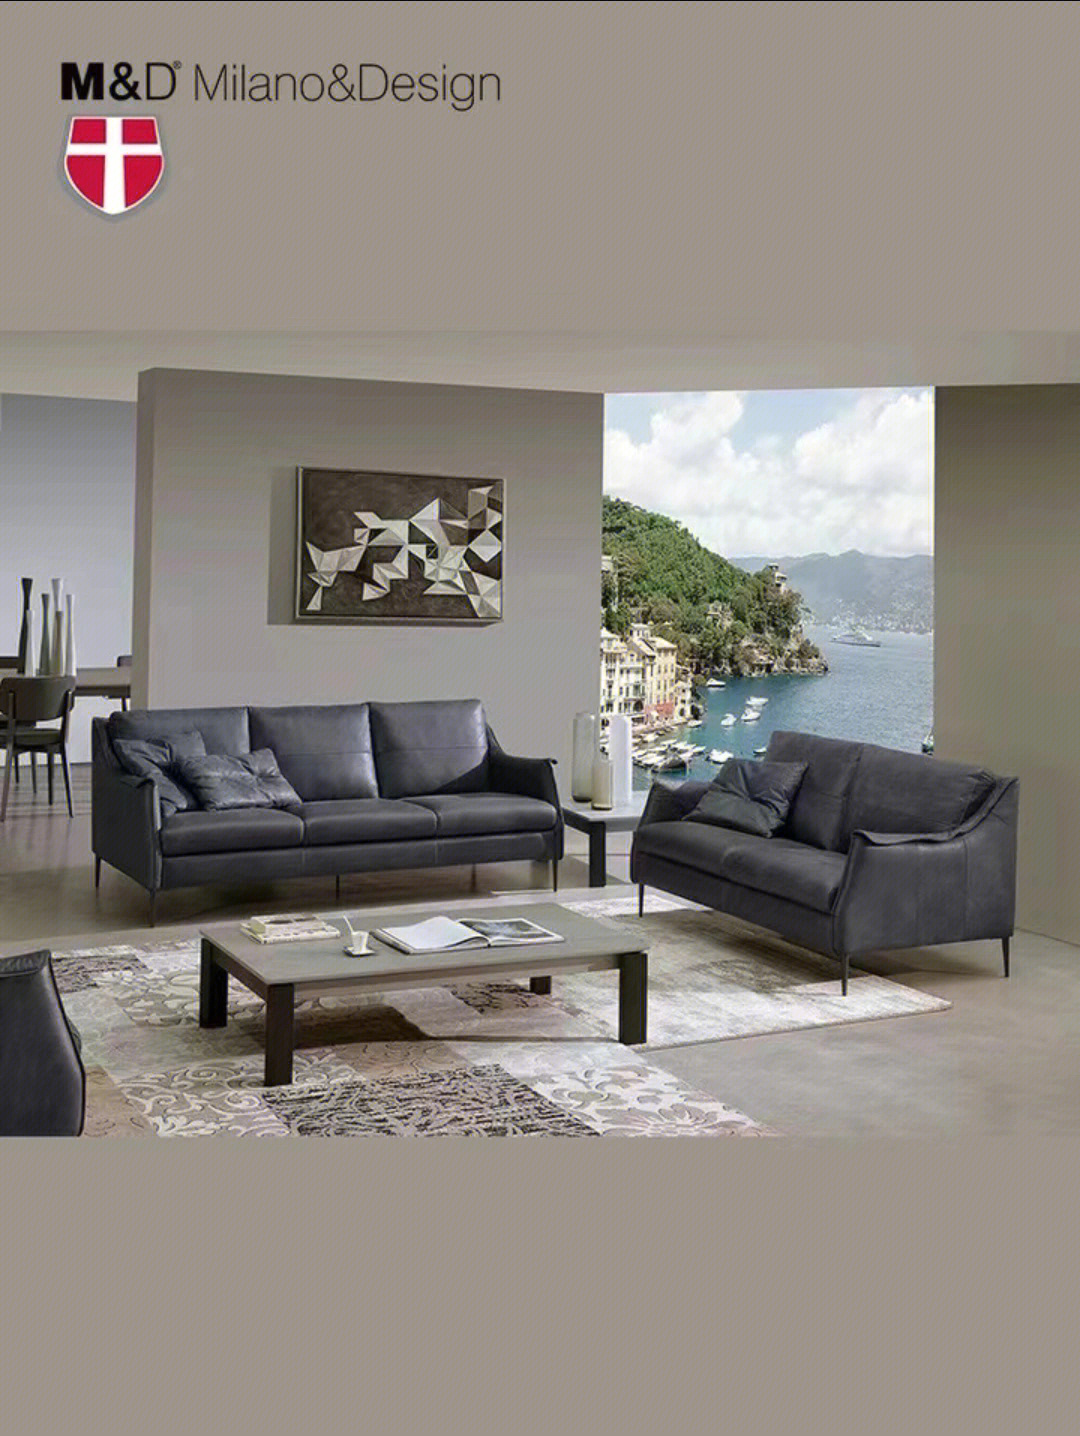 意大利原装进口夏图 md 专业做沙发74年,历经3代人传承品牌